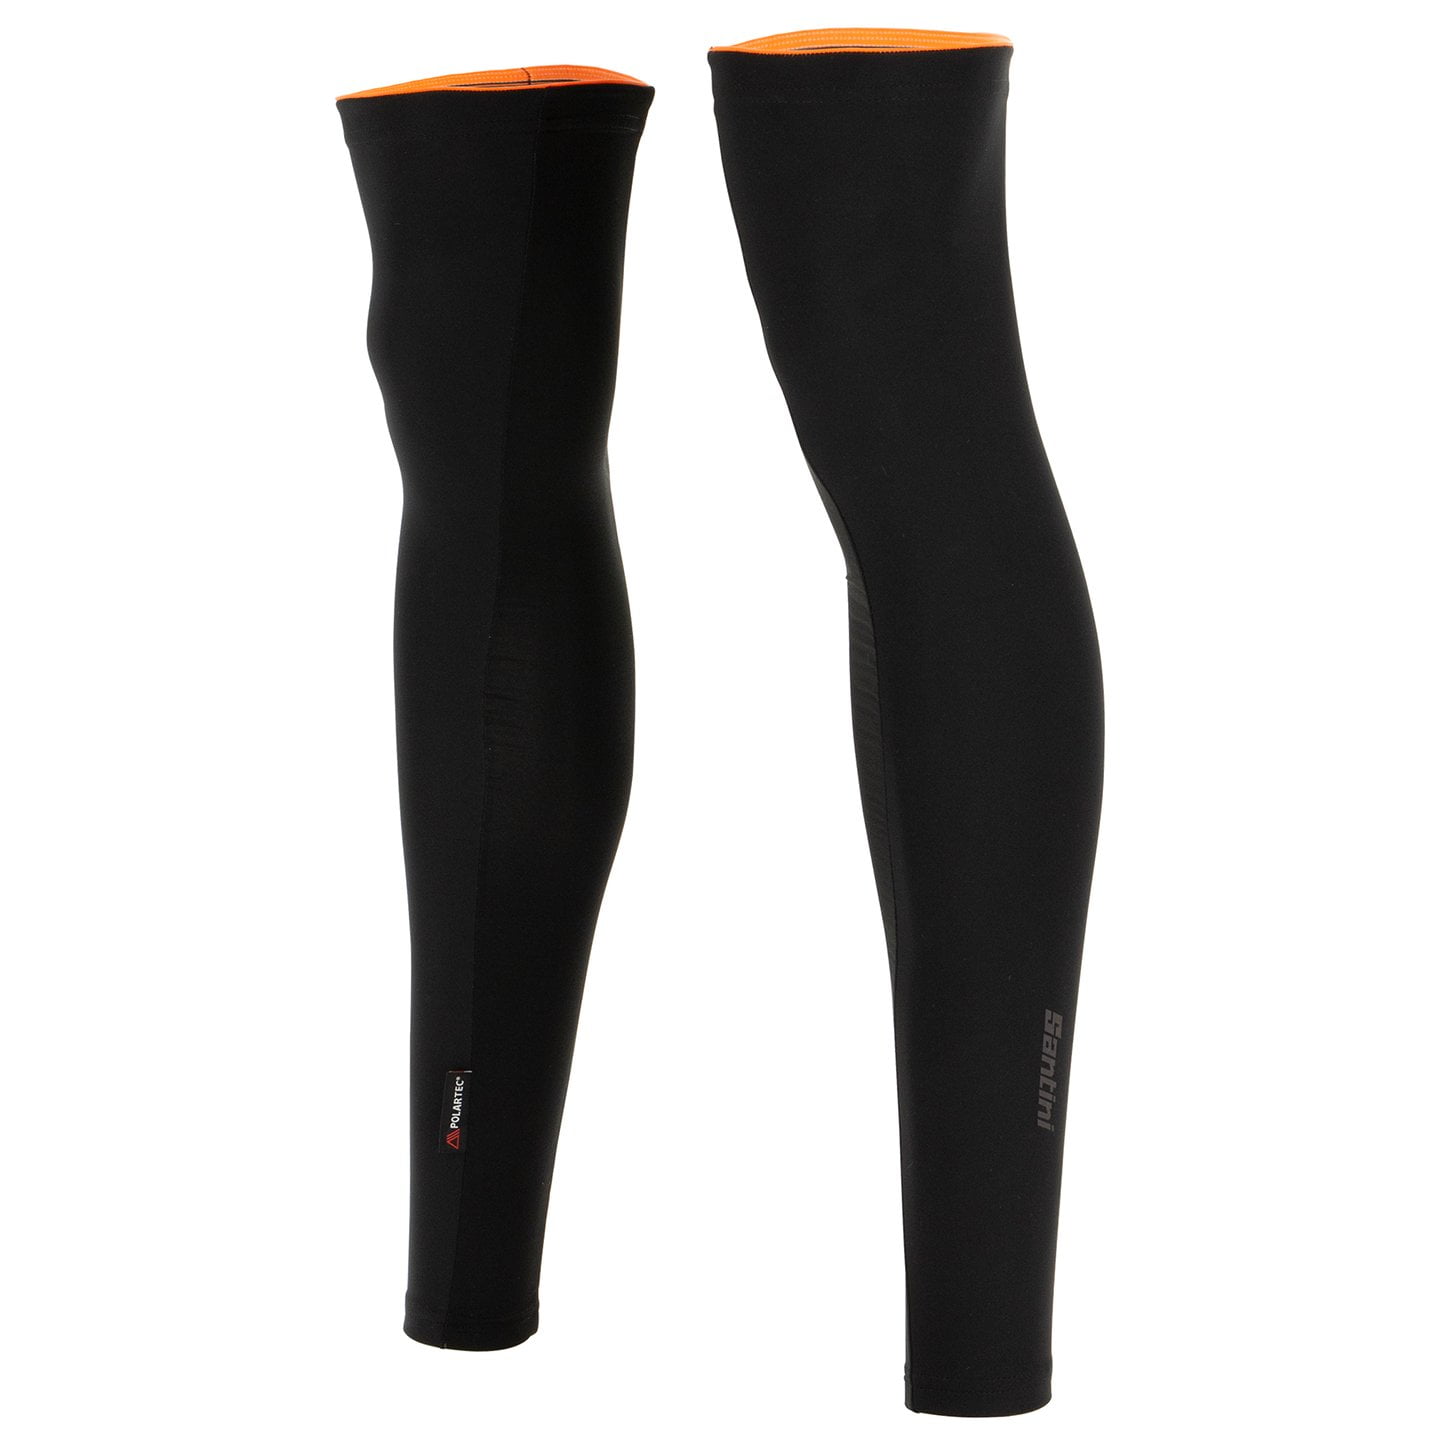 SANTINI Vega Multi Leg Warmers, for men, size XS